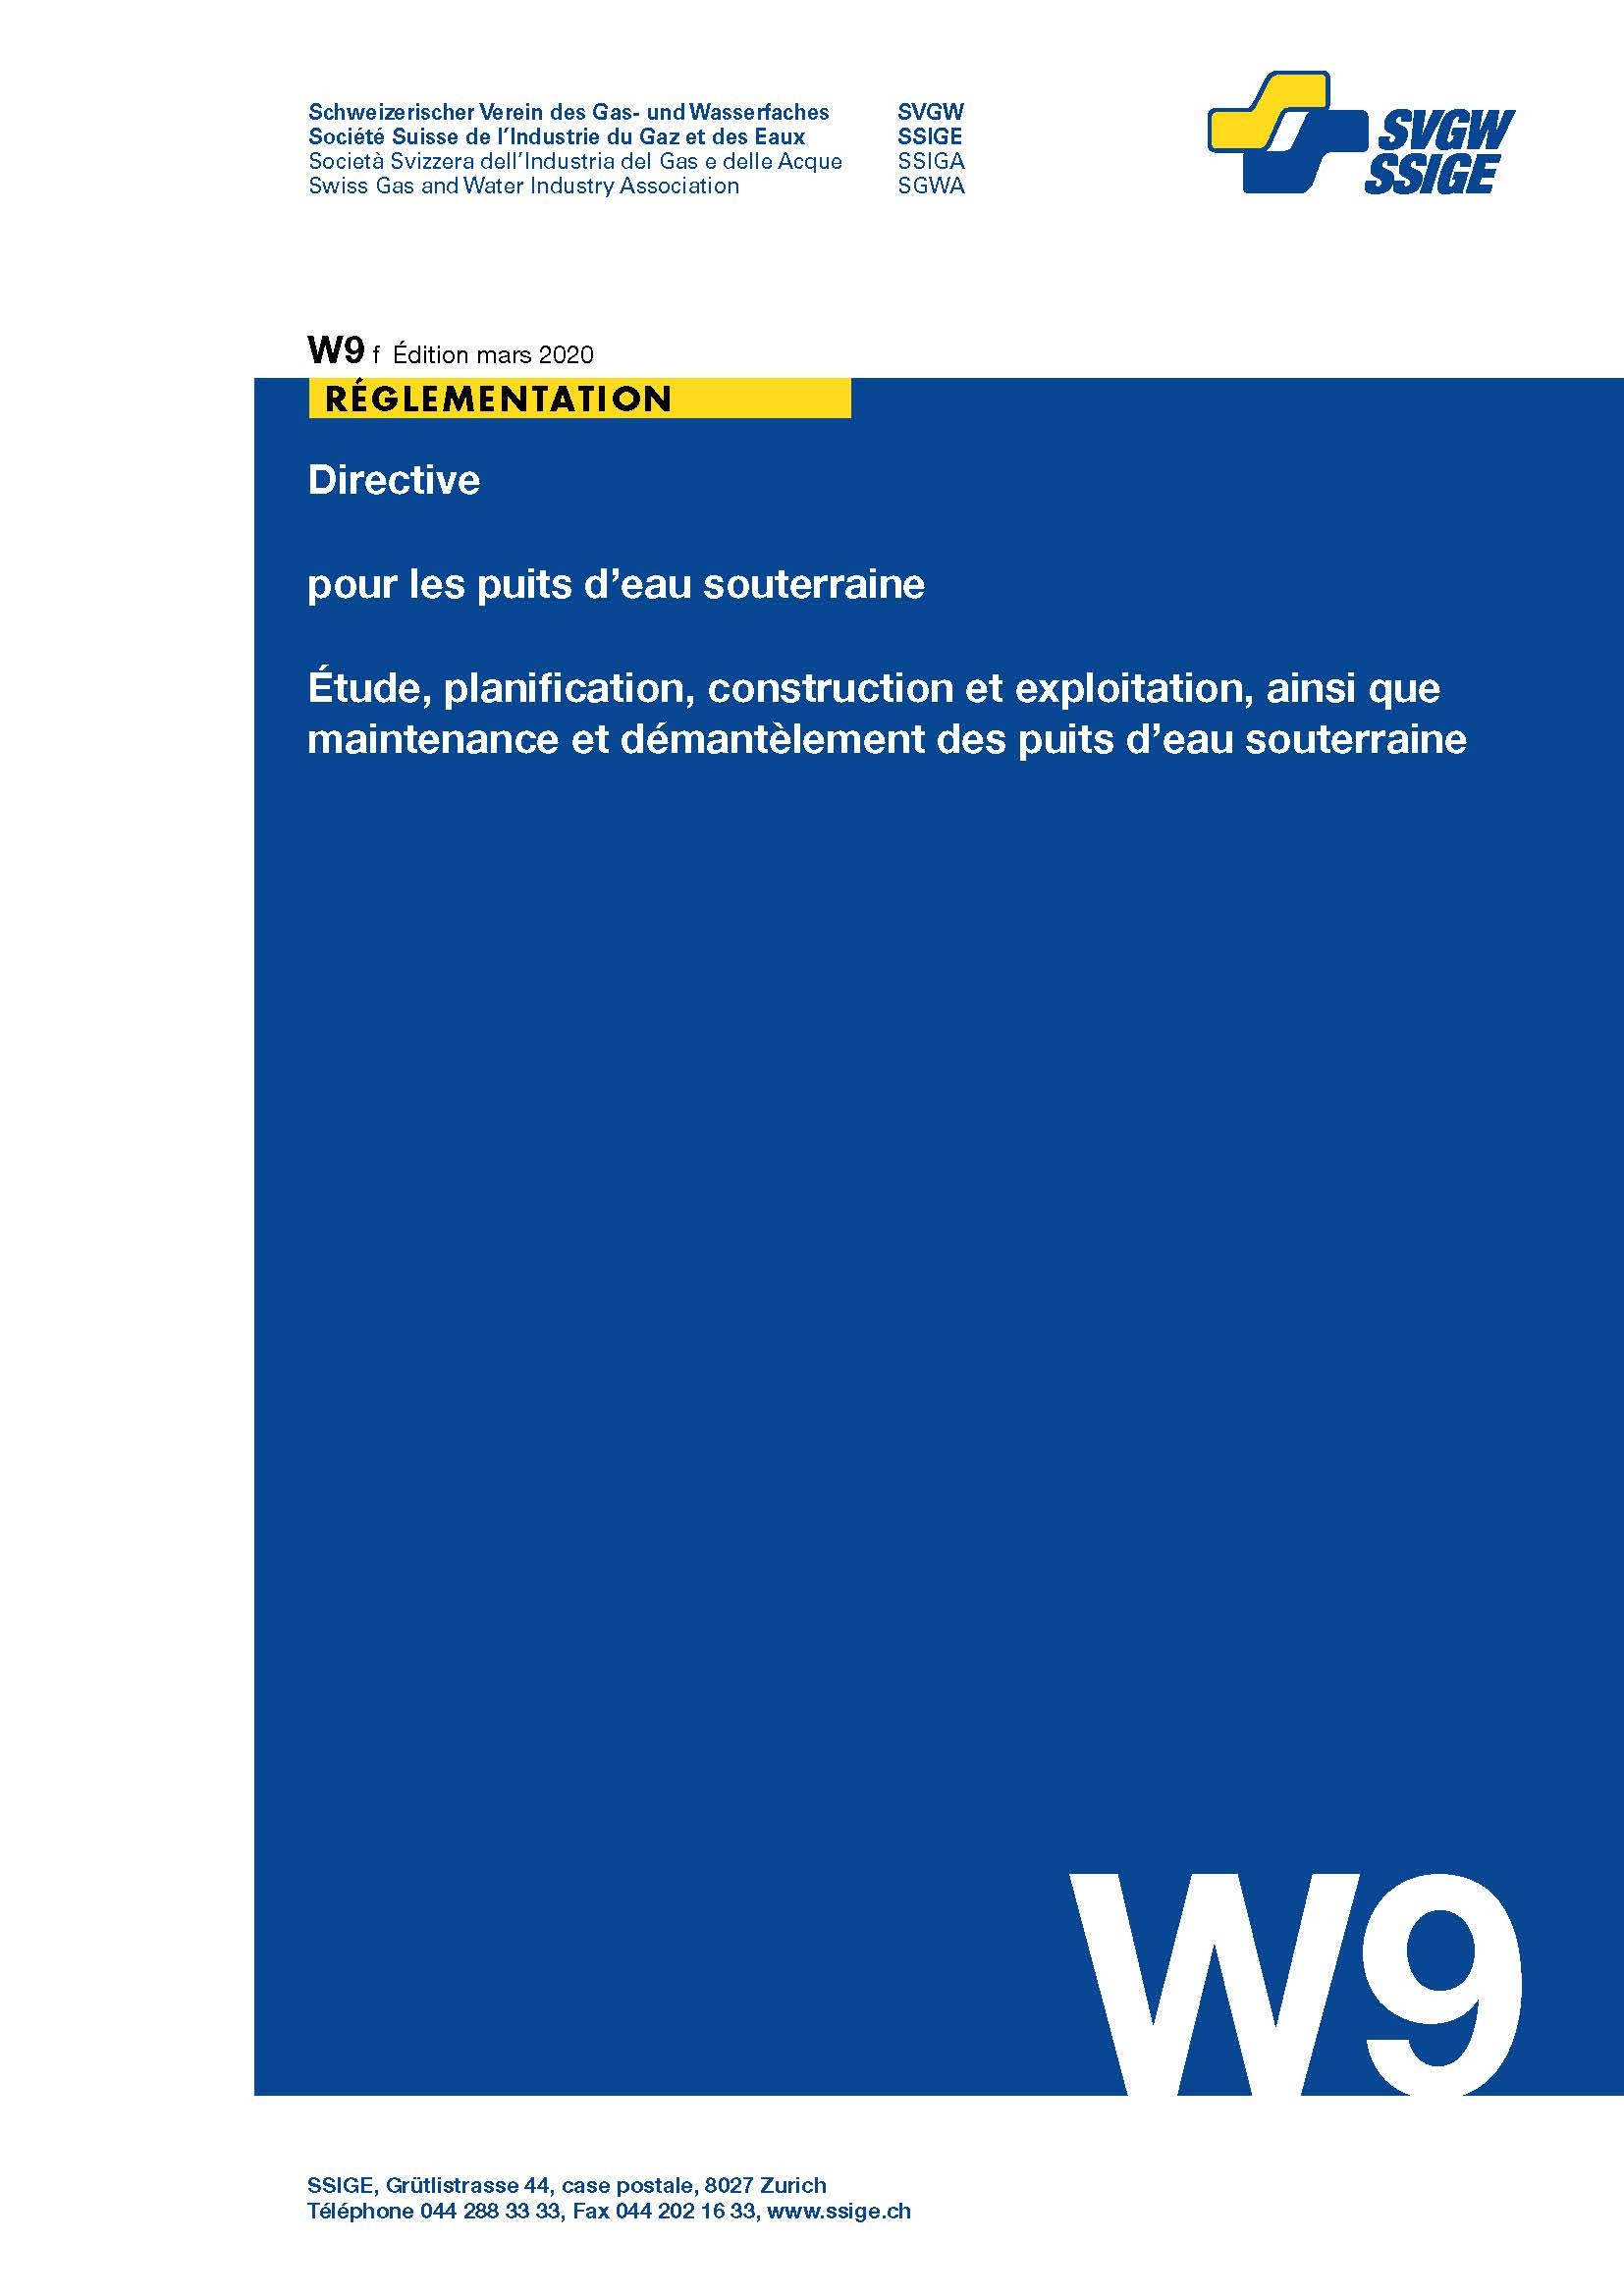 W9 f Directive pour les puits d'eau souterraine; Étude, planification, construction et exploitation, ainsi que maintenance et démantèlement des puits d'eau souterraine (2)